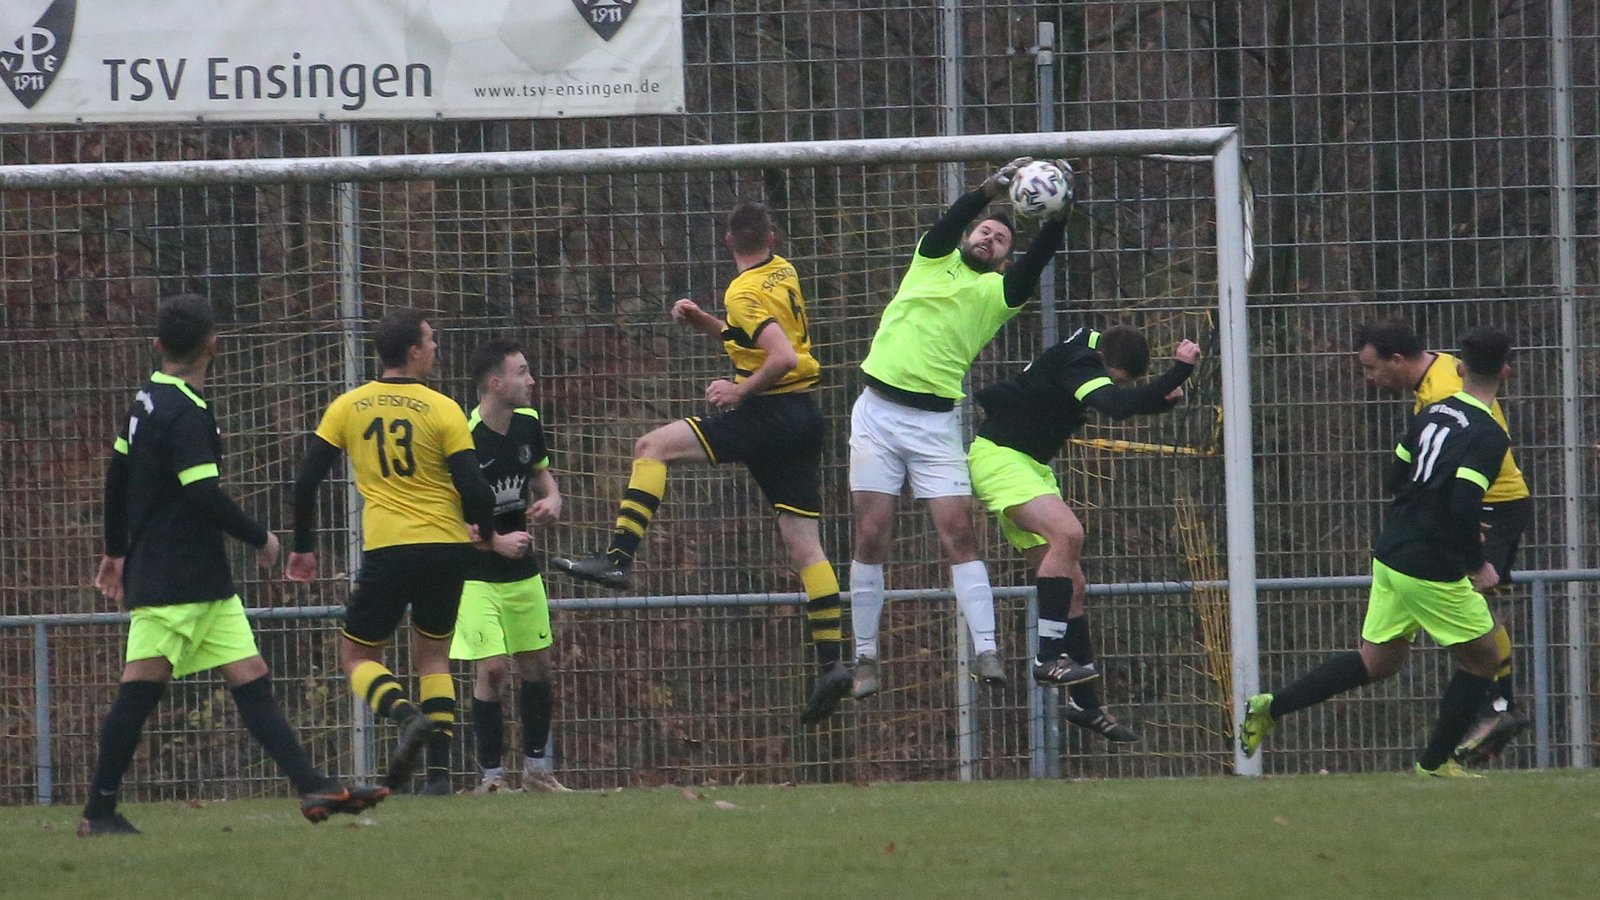 Der TSV Enzweihingen (grüne Hosen) hat bis auf das Spiel in Ensingen bislang ausschließlich Siege eingefahren. Jetzt geht es gegen Wiernsheim und Illingen II. Foto: Küppers